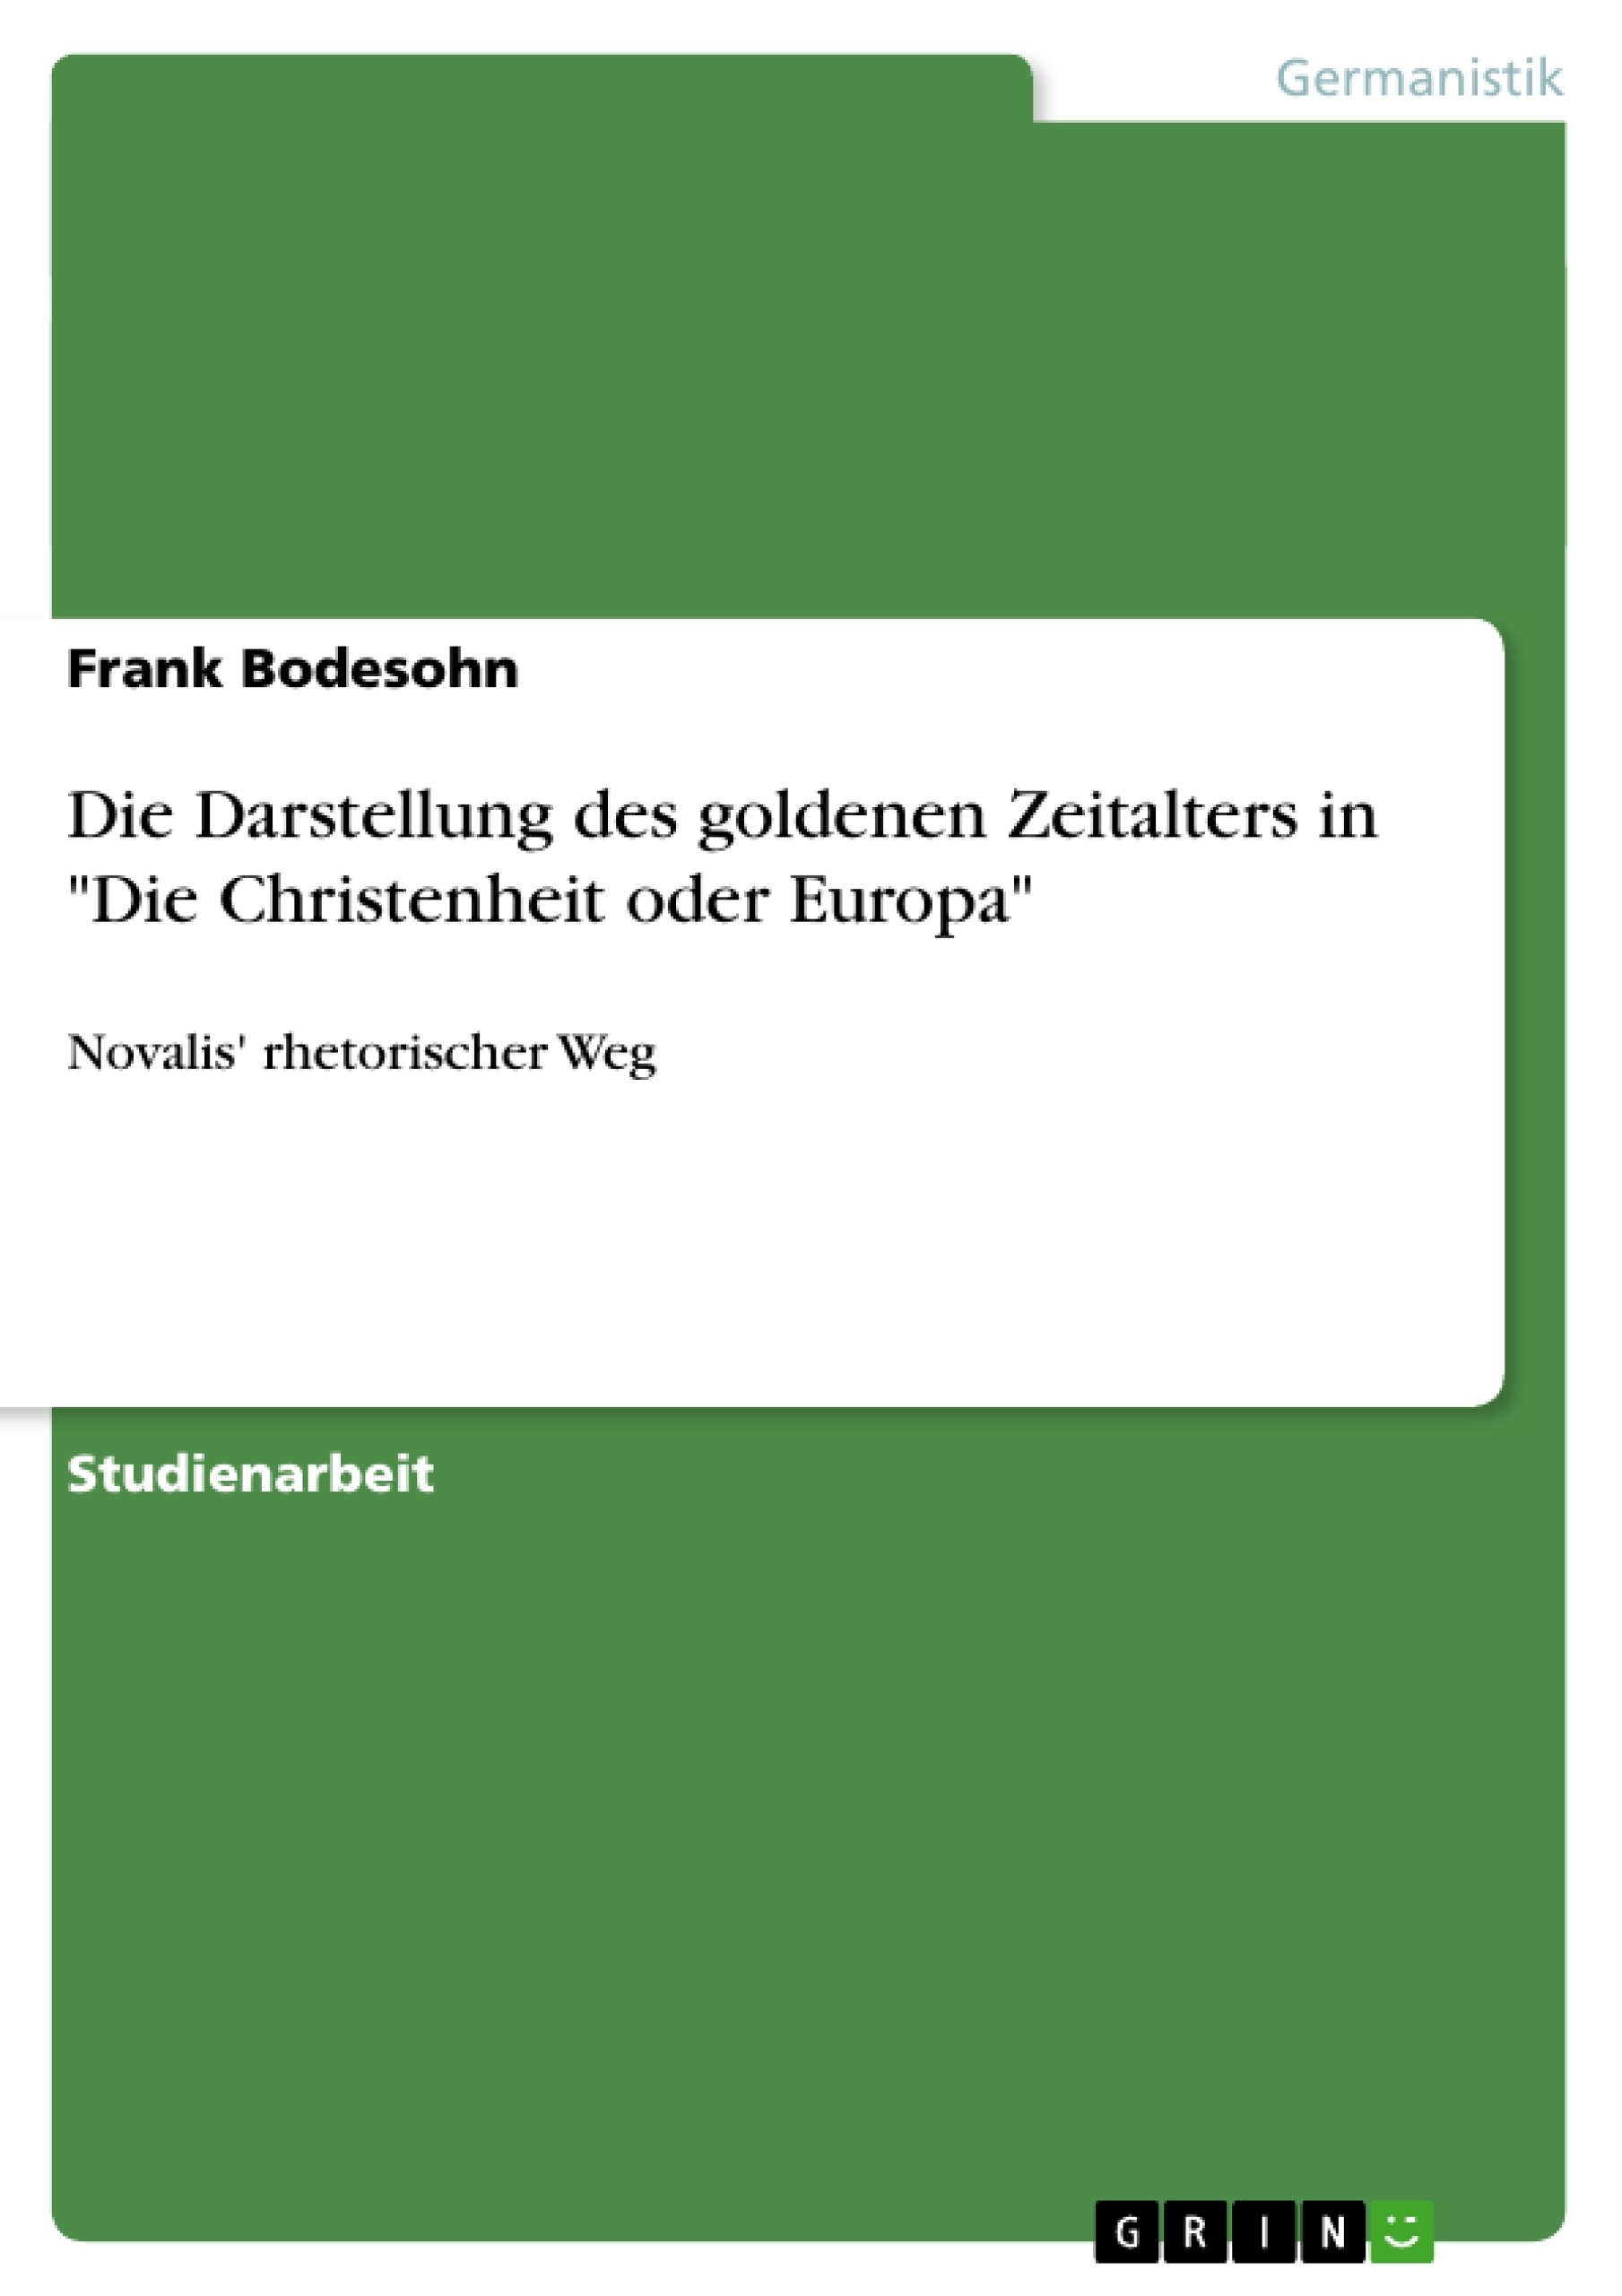 Título: Die Darstellung des goldenen Zeitalters in "Die Christenheit oder Europa"